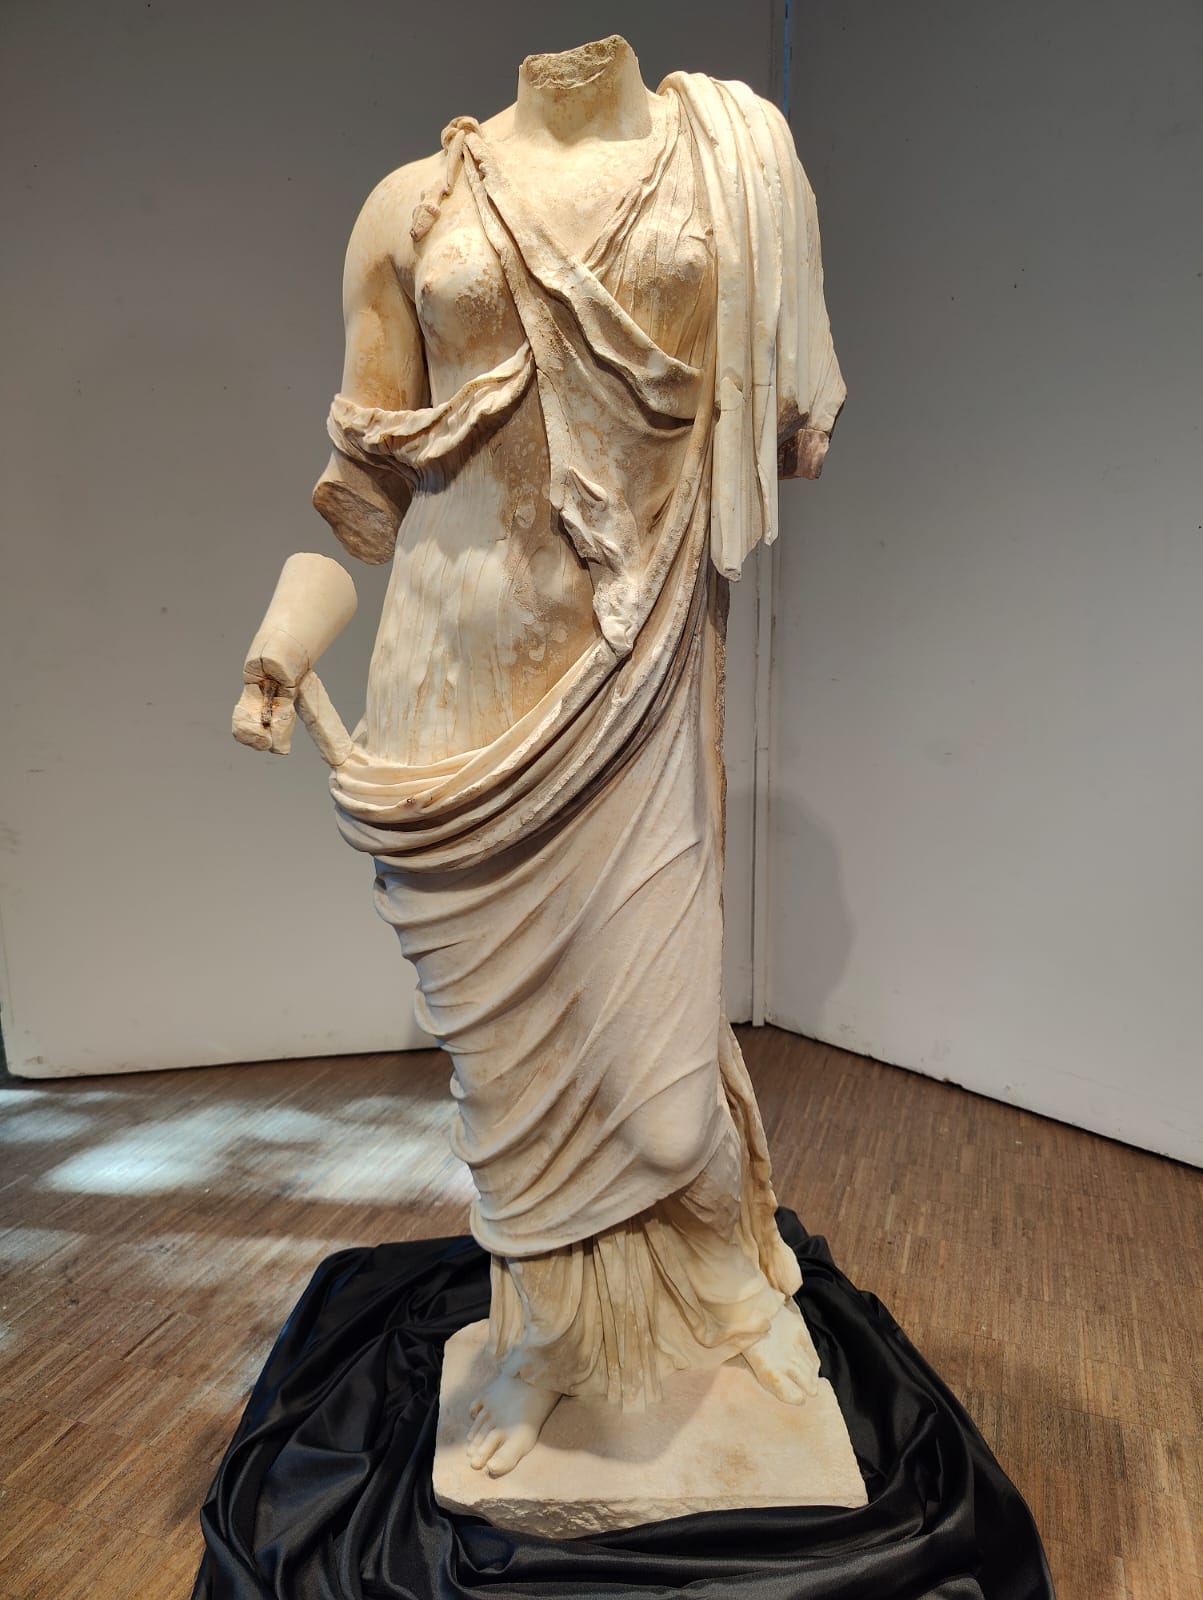 Hallan estatua femenina de mármol de época romana en el yacimiento italiano de Tusculum